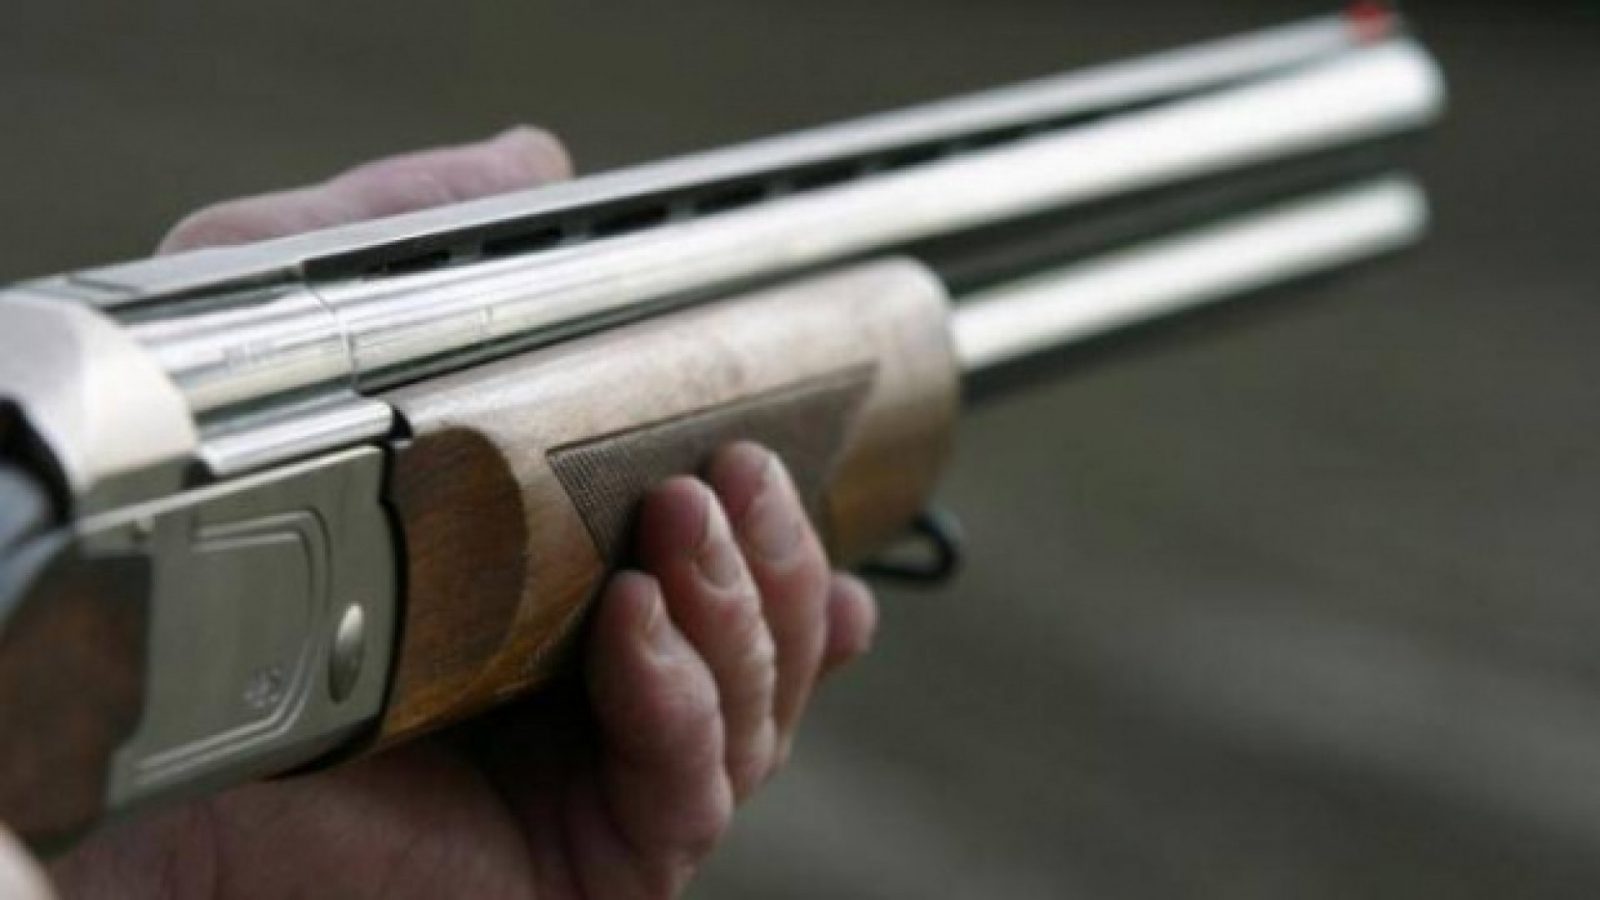 Un bărbat din raionul Briceni a fost împușcat la vânătoare din întâmplare chiar de către amicul său